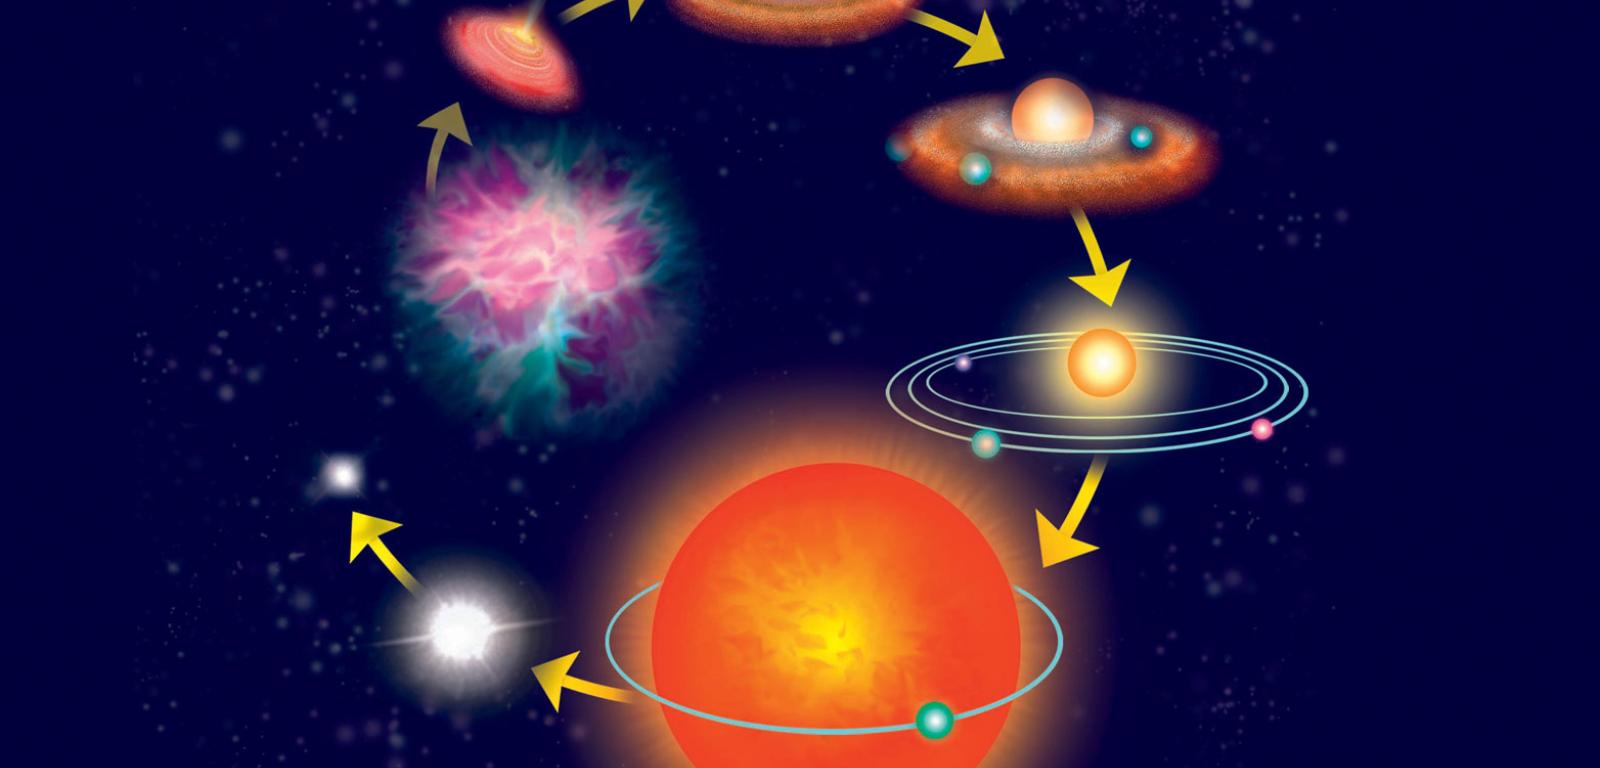 Ewolucja gwiazd typu słonecznego. Z obłoku molekularnego tworzy się protogwiazda z dyskiem otaczającej jej materii. Po wypaleniu wodoru gwiazda przeistacza się w czerwonego olbrzyma, z którego w ostateczności pozostaje tylko jej jądro – biały karzeł.